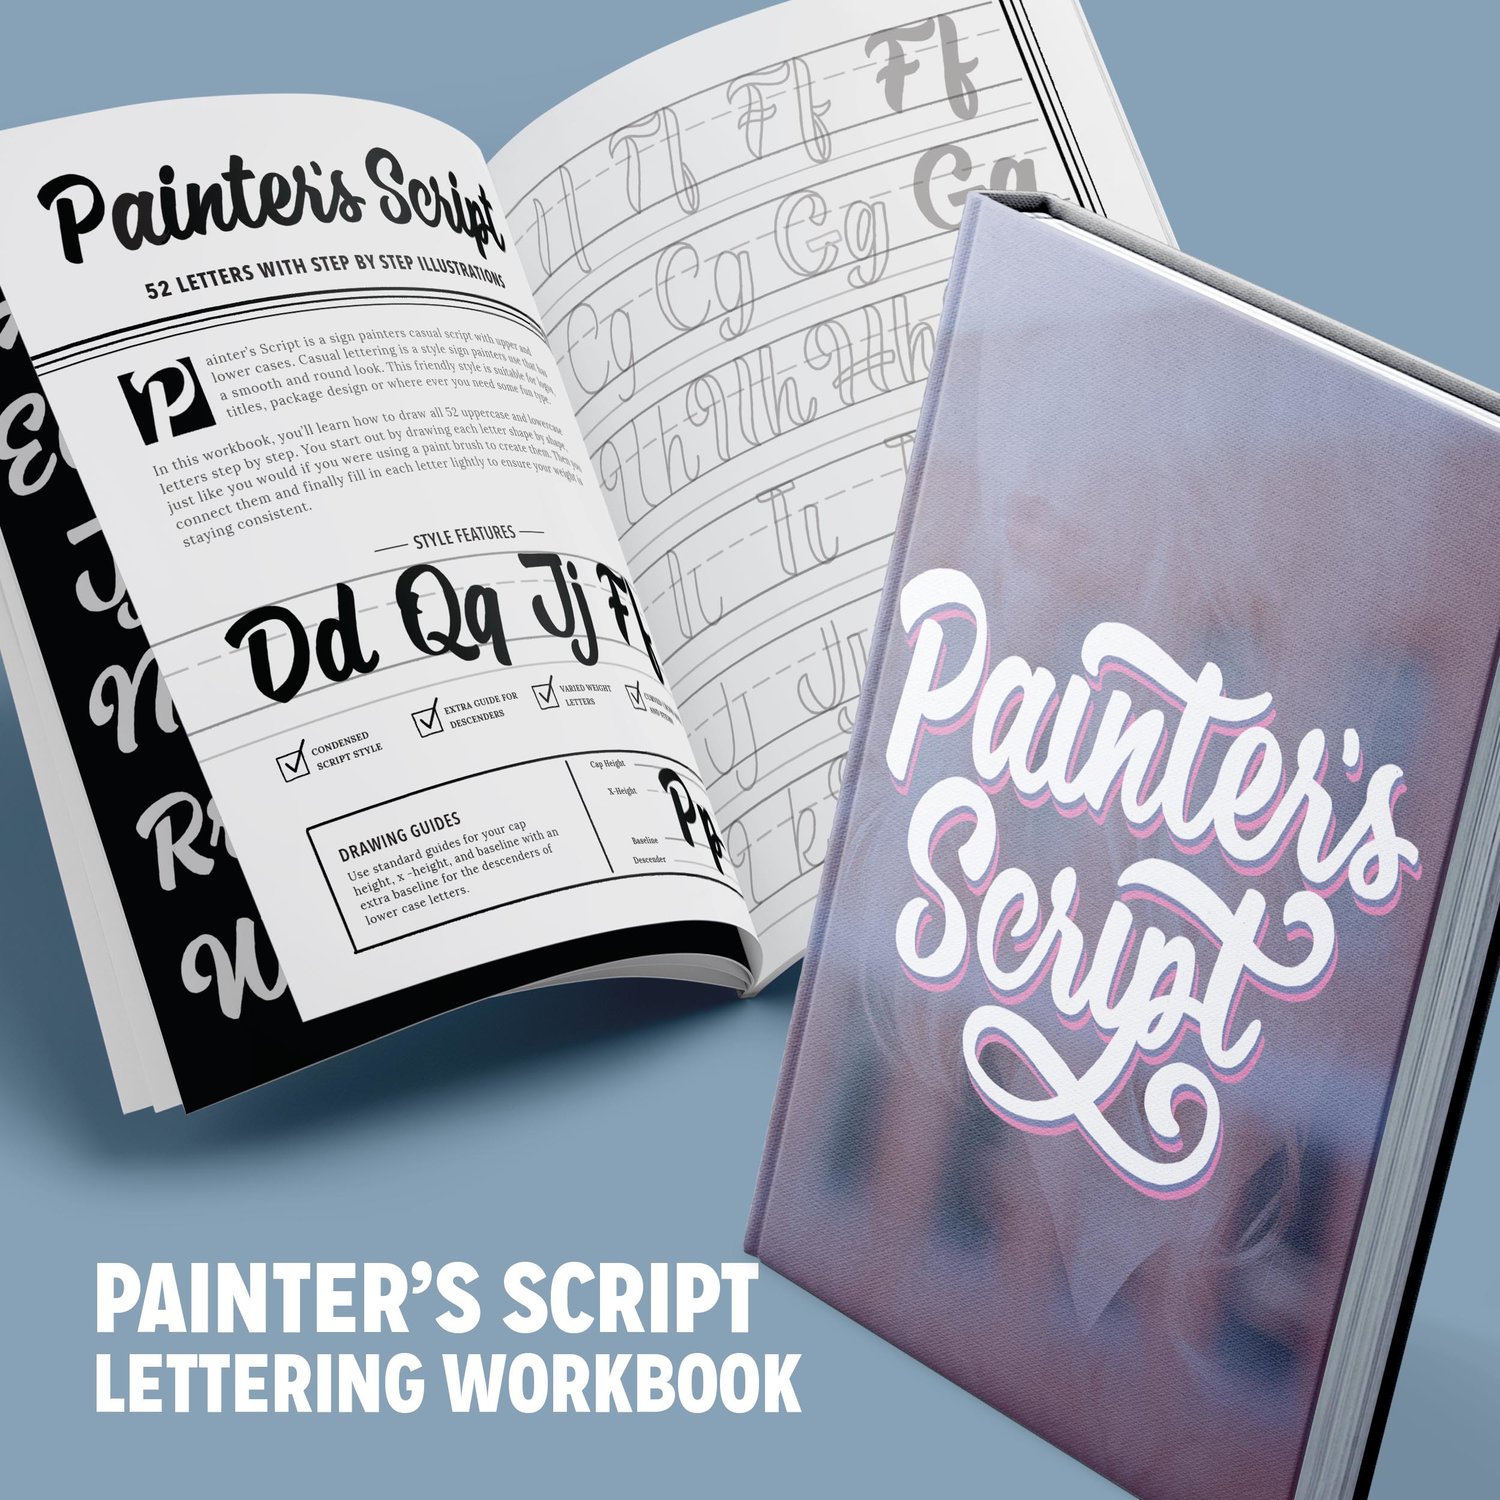 PAINTER'S SCRIPT LETTERING WORKBOOK (PDF) by LetterShoppe — STEFAN